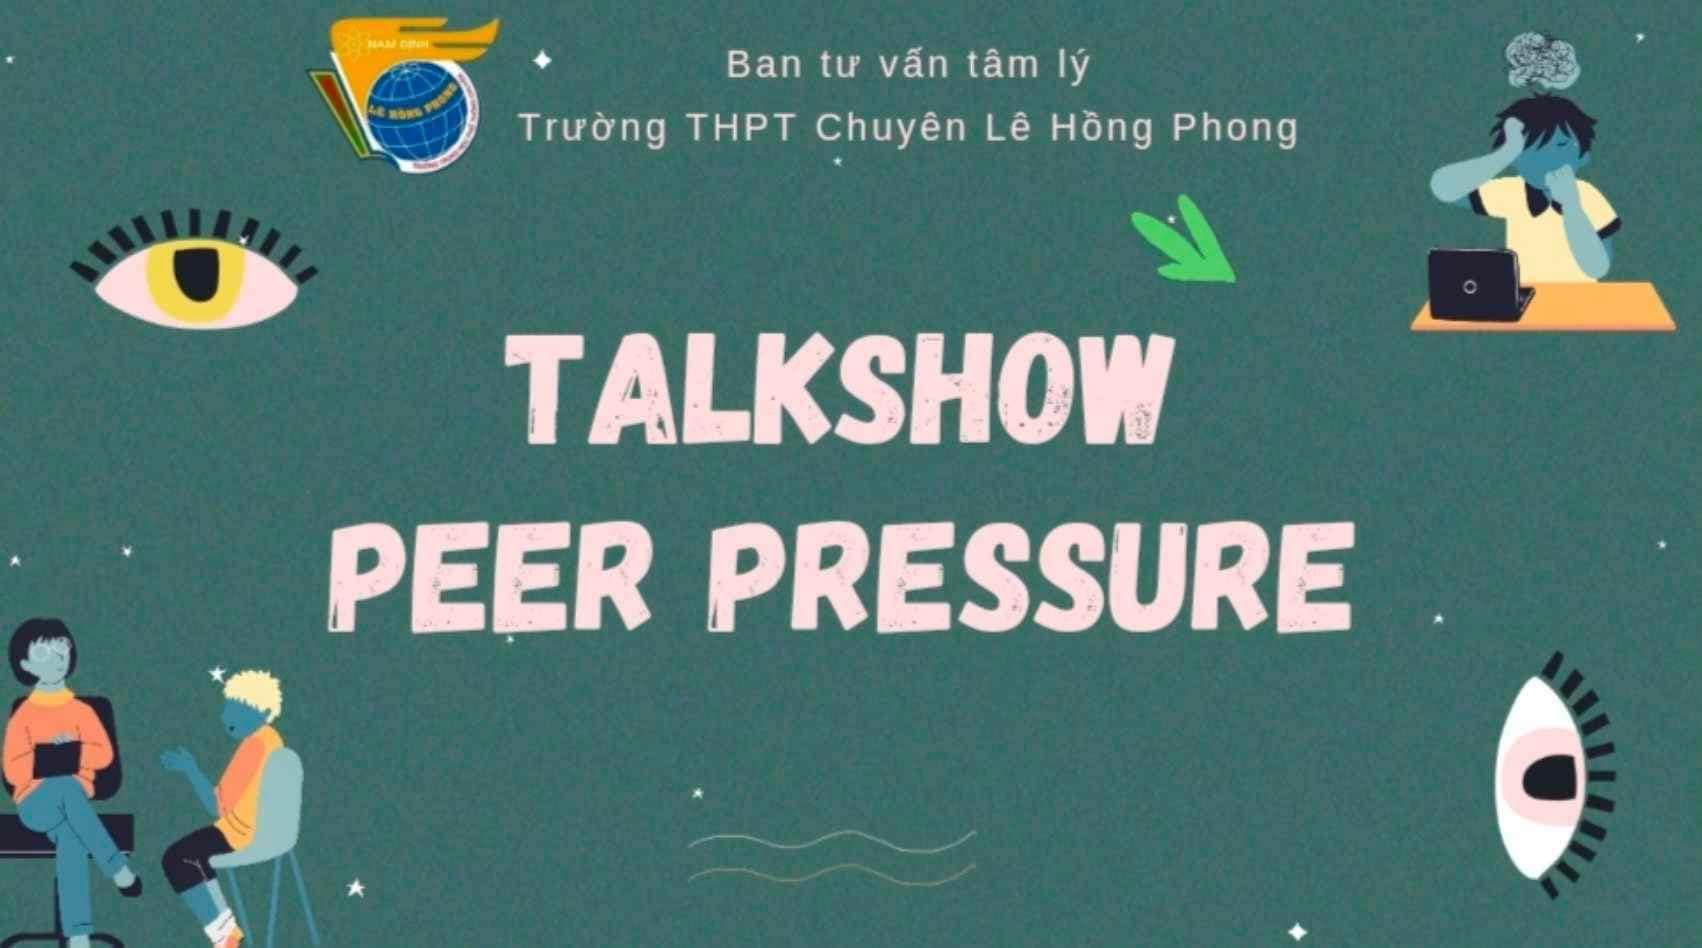 Talkshow “Peer pressure”